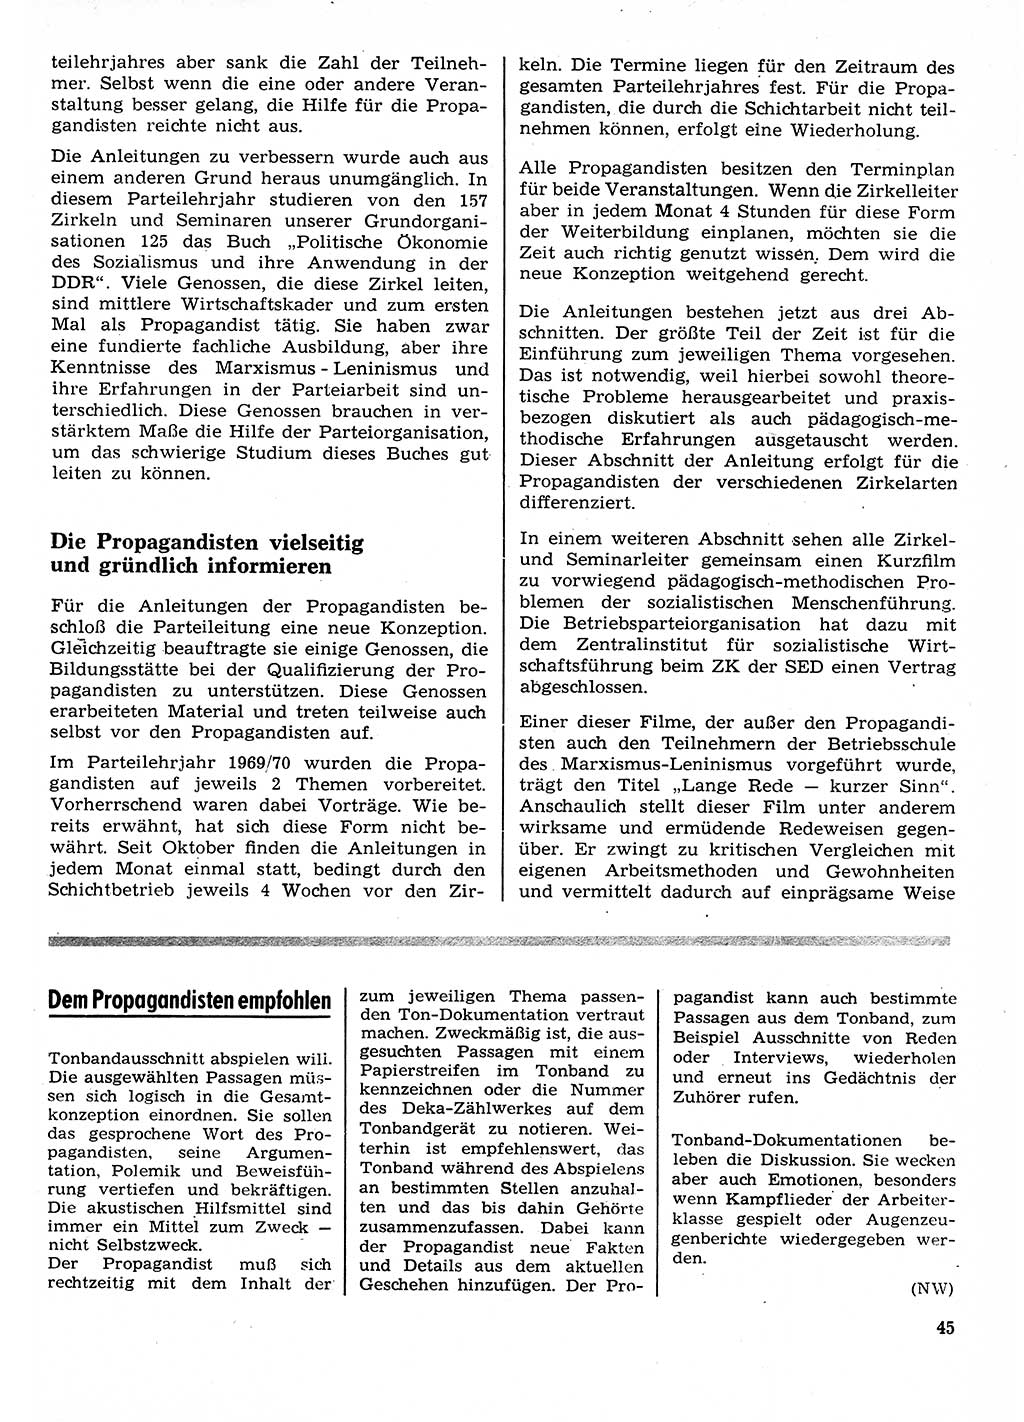 Neuer Weg (NW), Organ des Zentralkomitees (ZK) der SED (Sozialistische Einheitspartei Deutschlands) für Fragen des Parteilebens, 26. Jahrgang [Deutsche Demokratische Republik (DDR)] 1971, Seite 45 (NW ZK SED DDR 1971, S. 45)